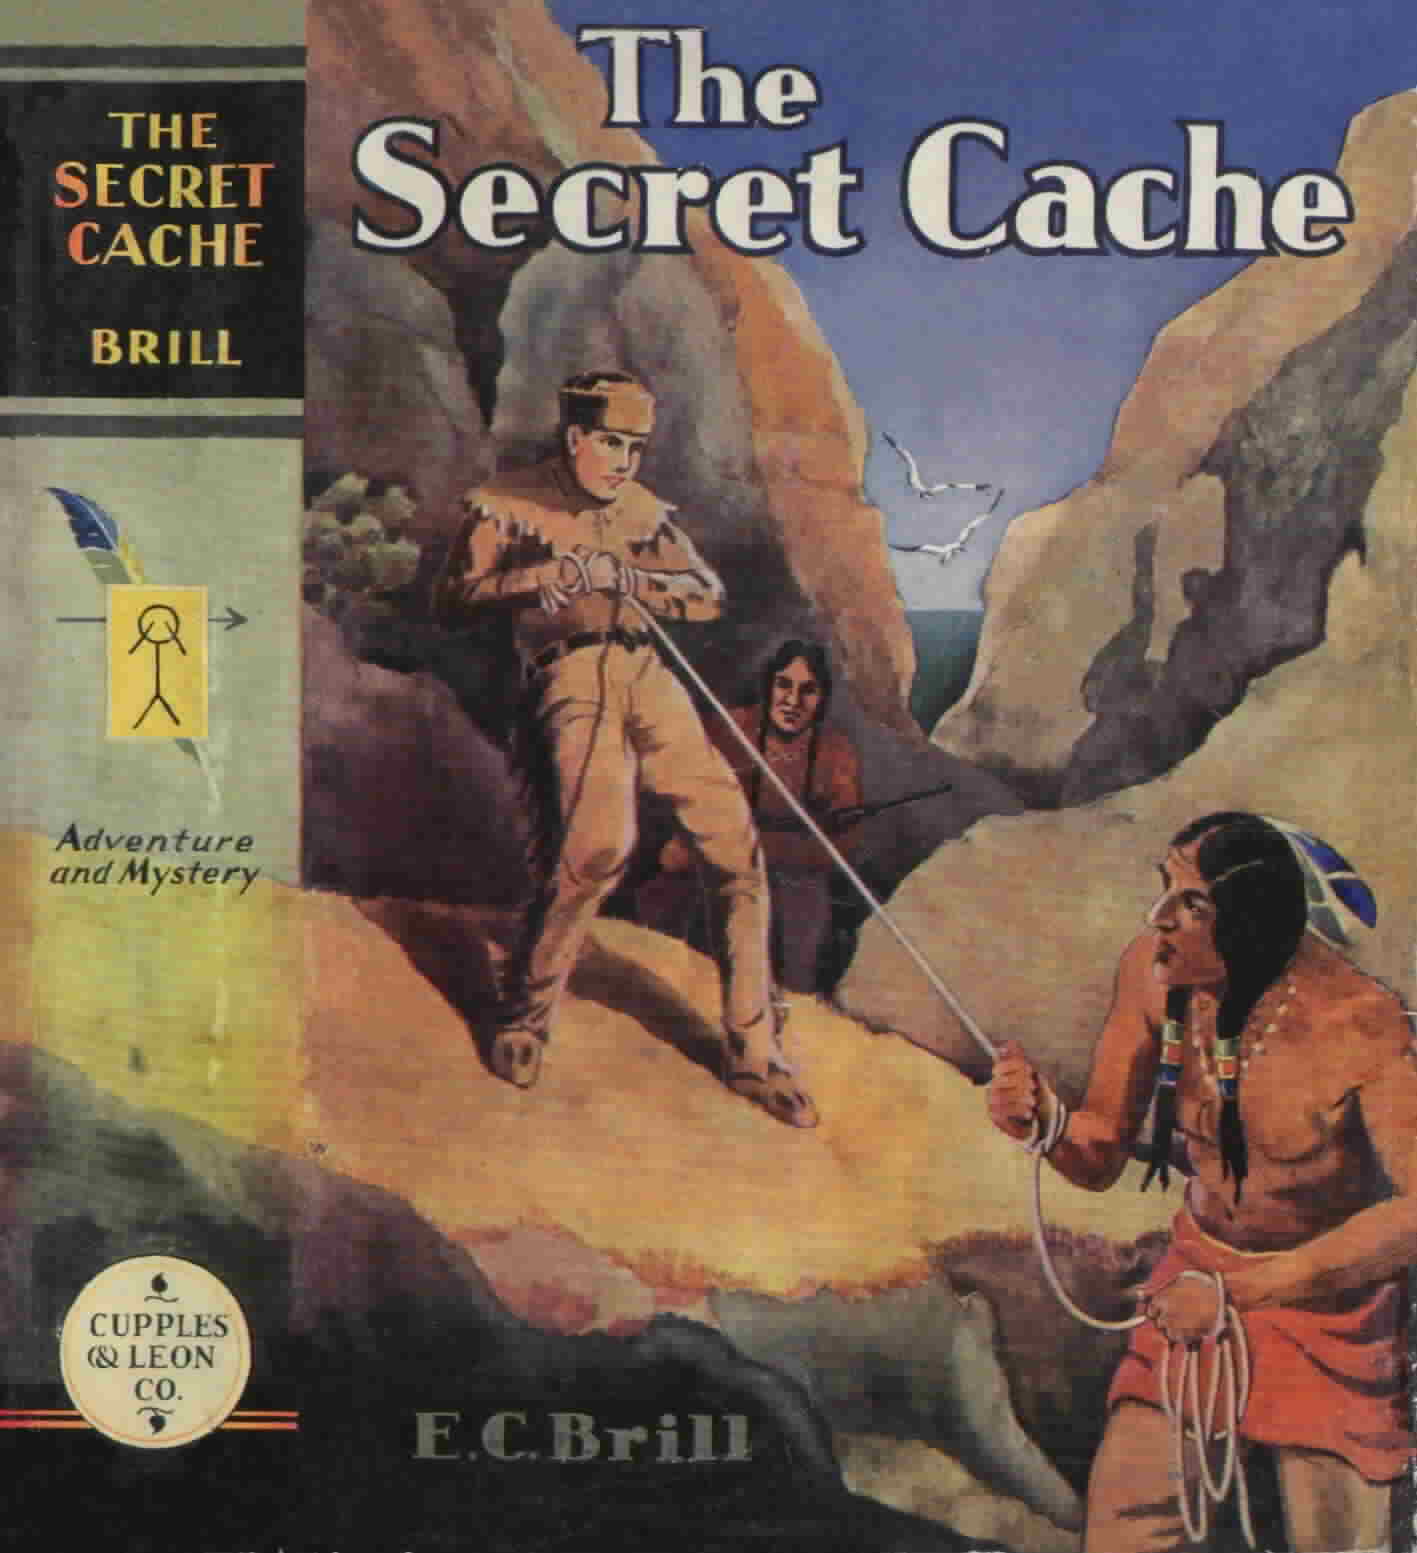 'The Secret Cache' by E. C. Brill